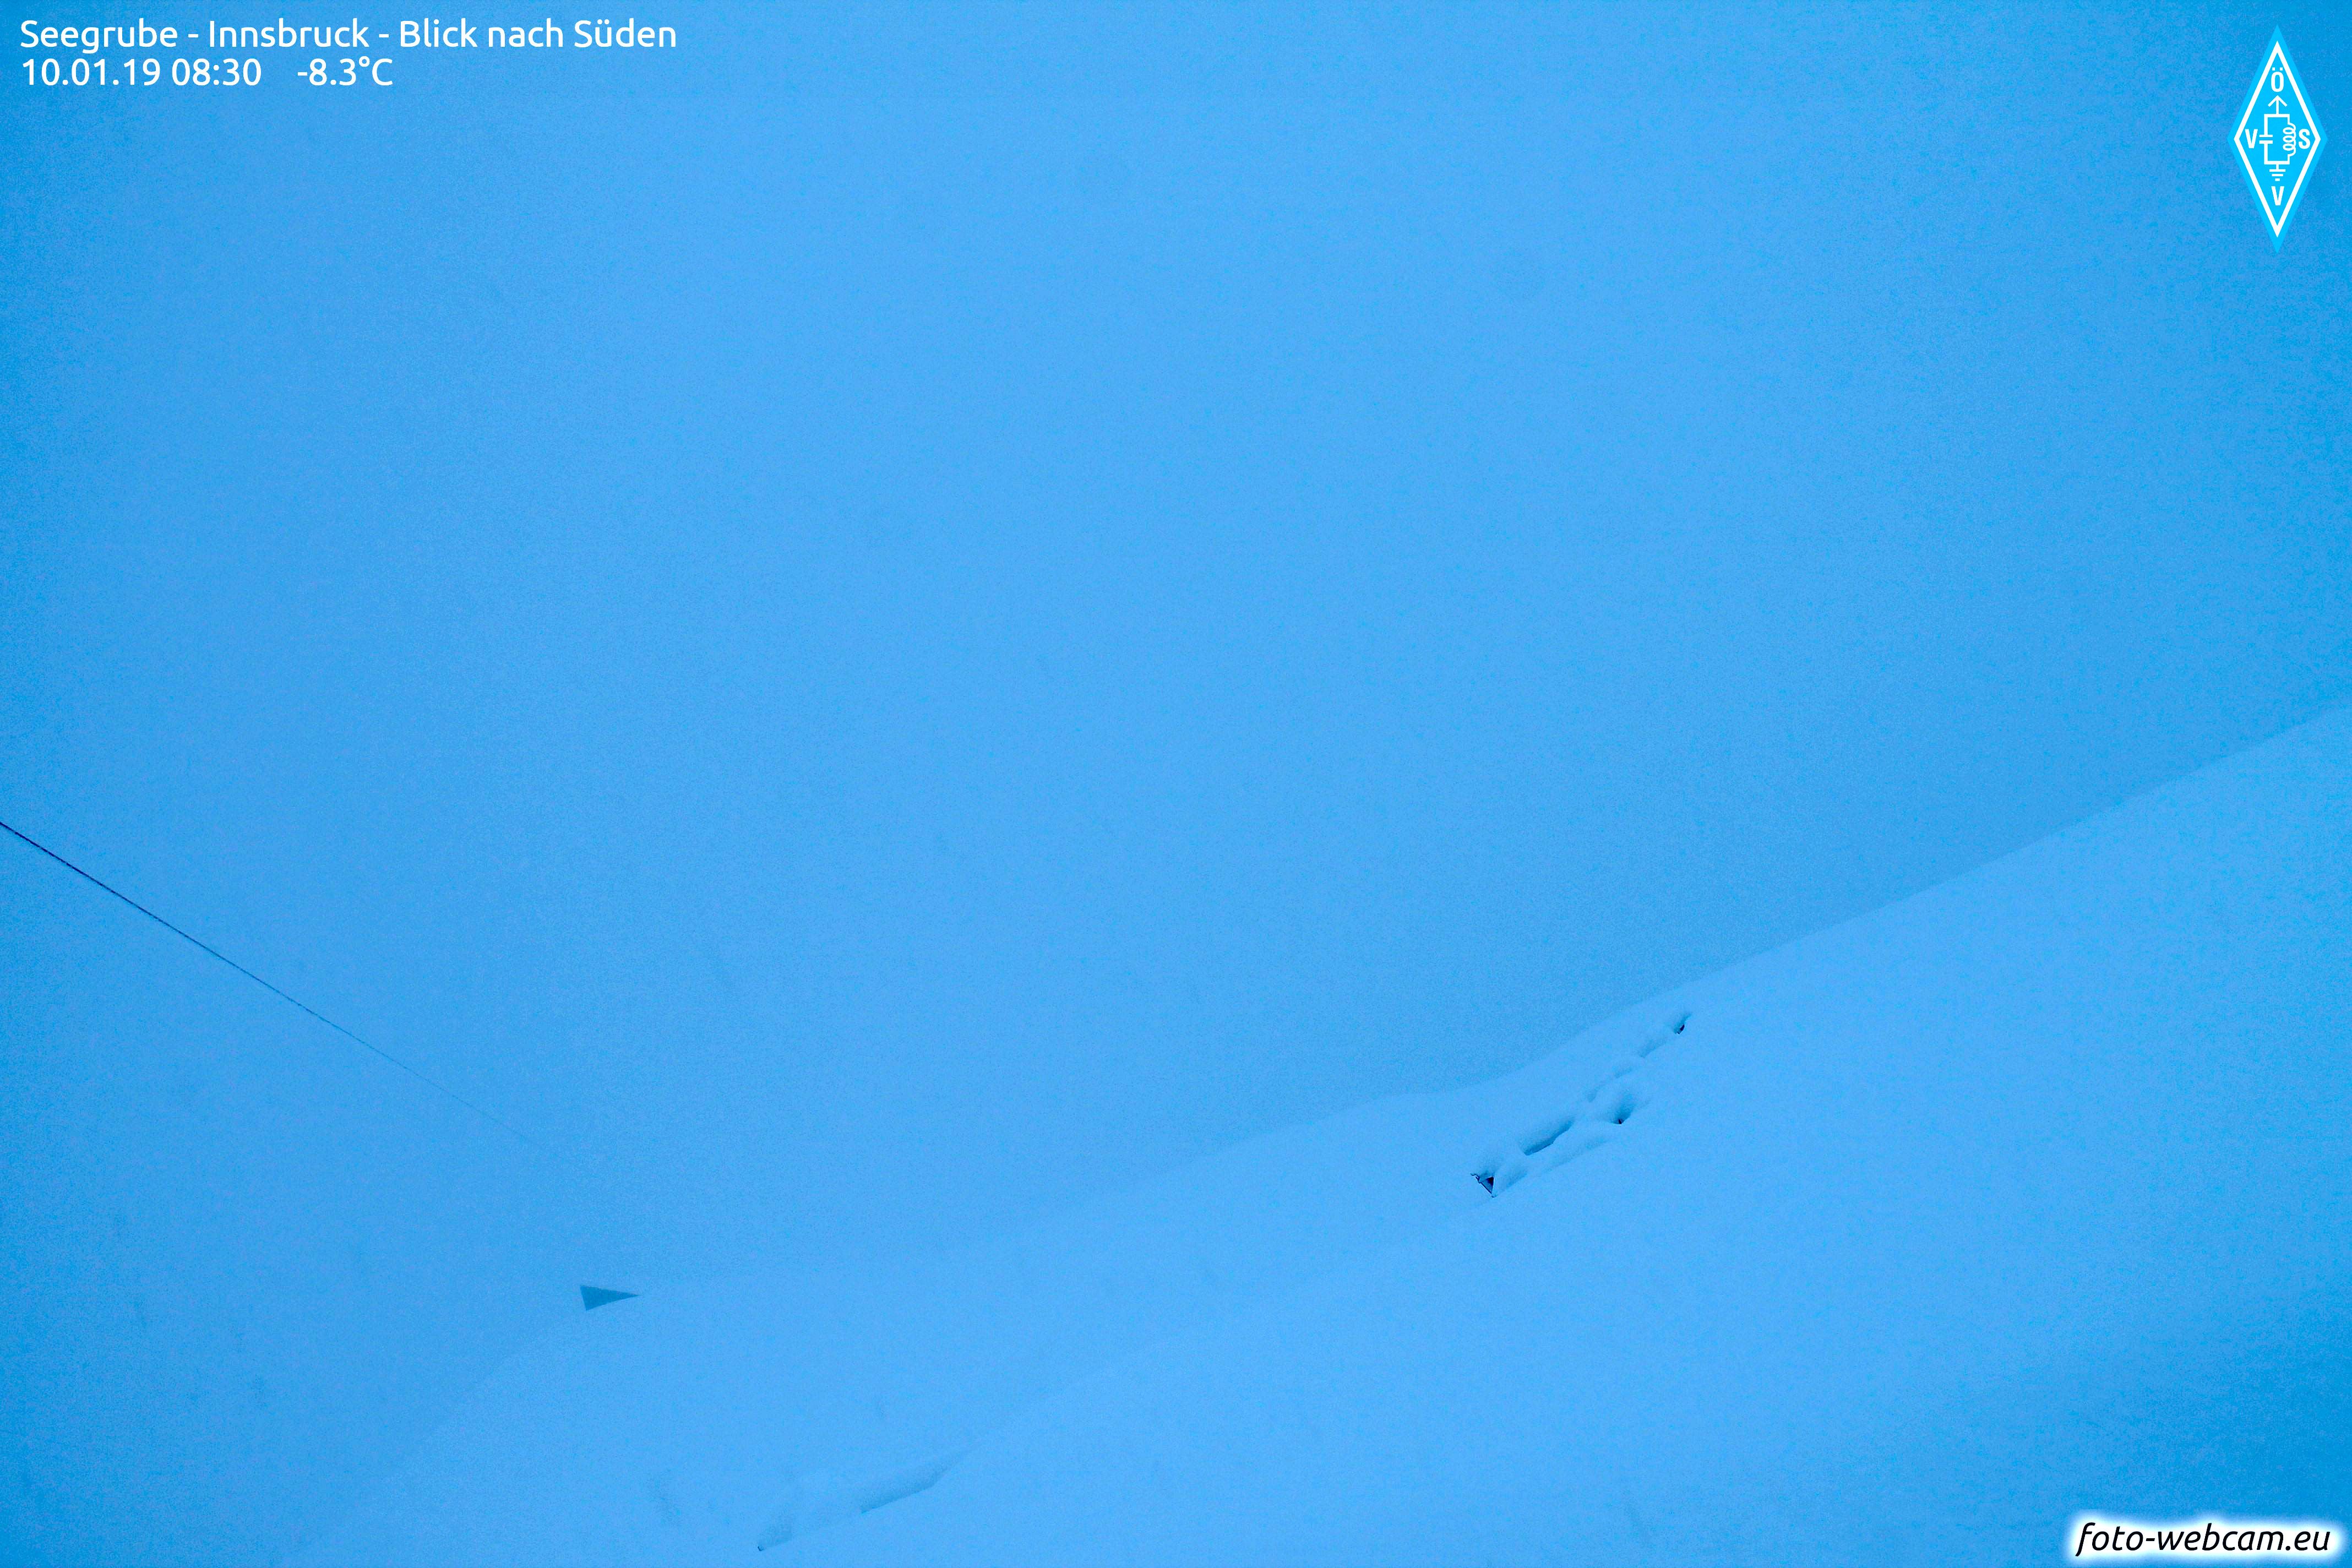 De lawinehekken op de Nordkette steken nog net boven de sneeuw uit